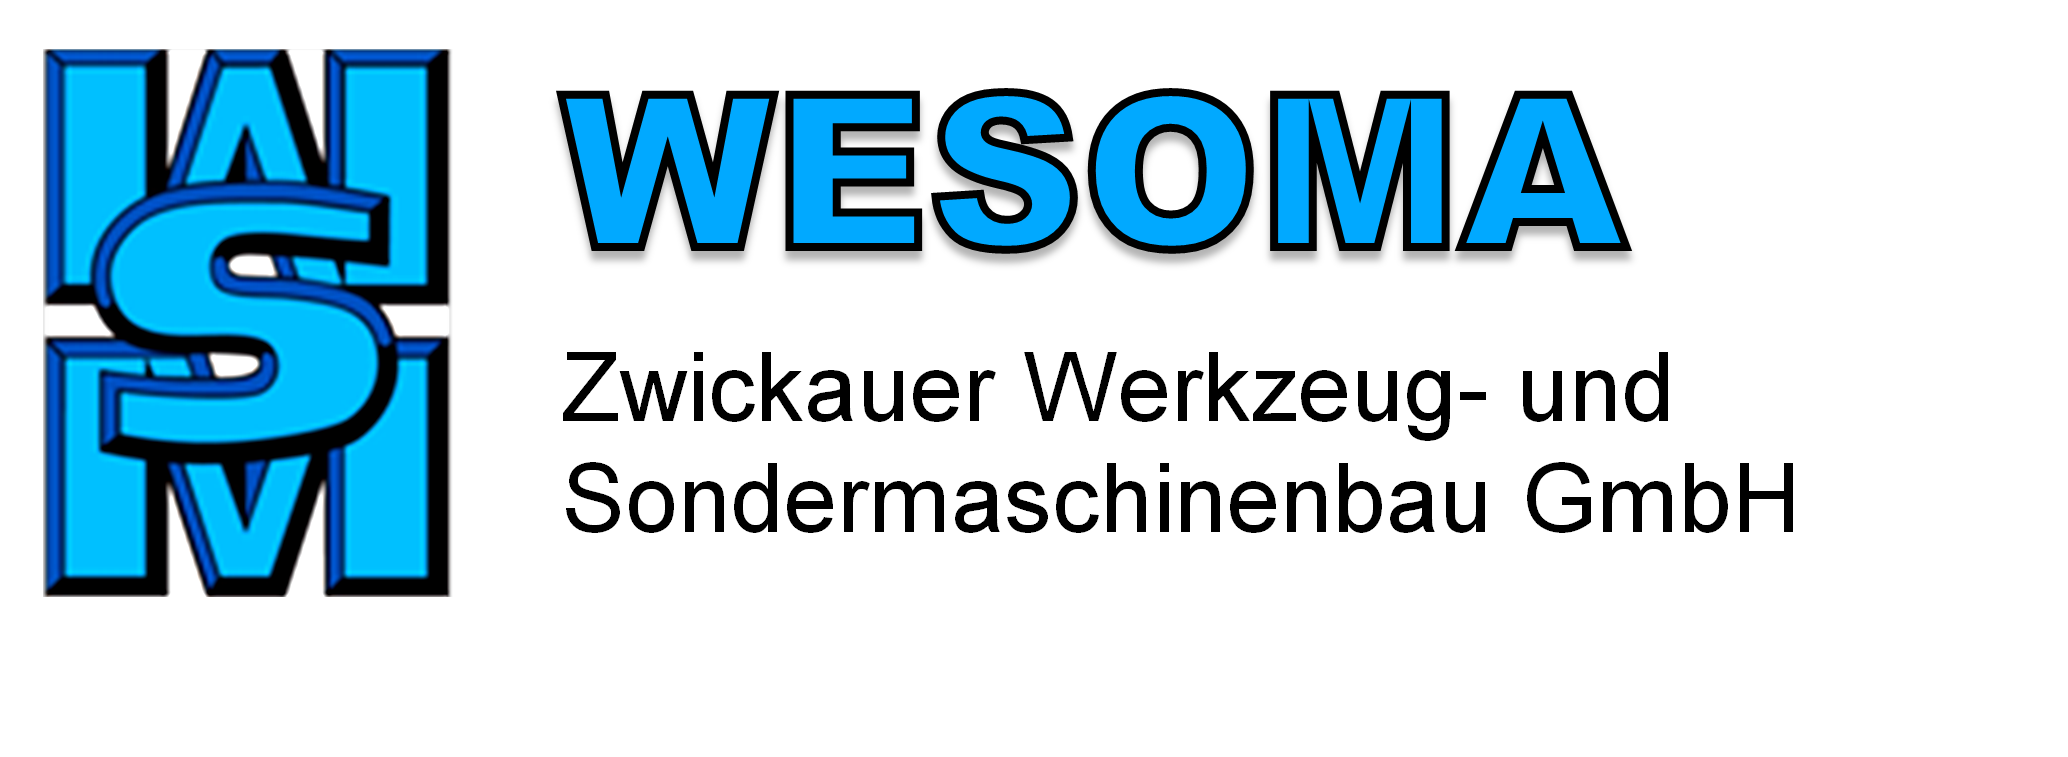 WESOMA GmbH